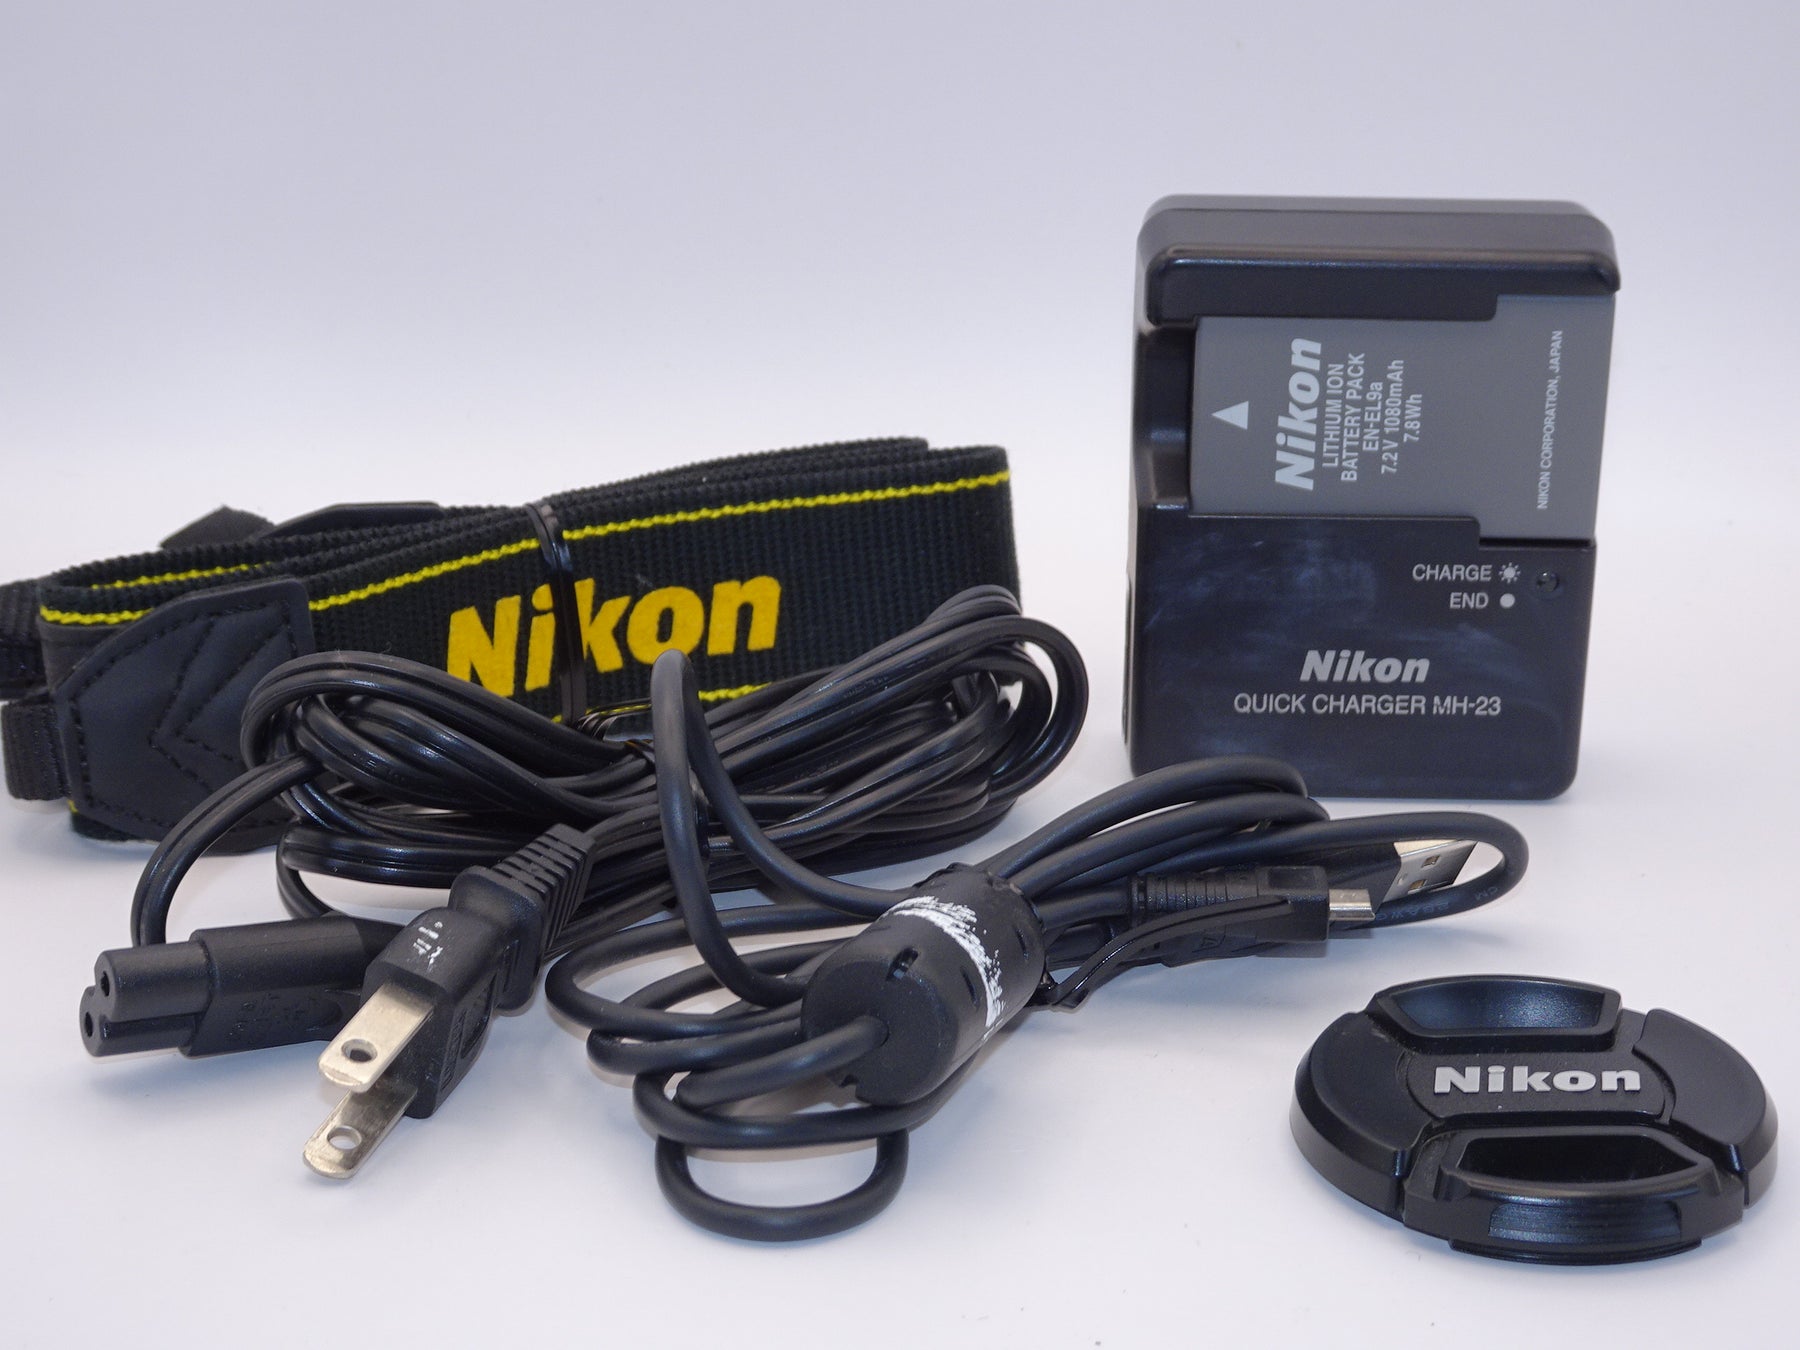 【外観特上級】Nikon デジタル一眼レフカメラ D5000 レンズキット D5000LK